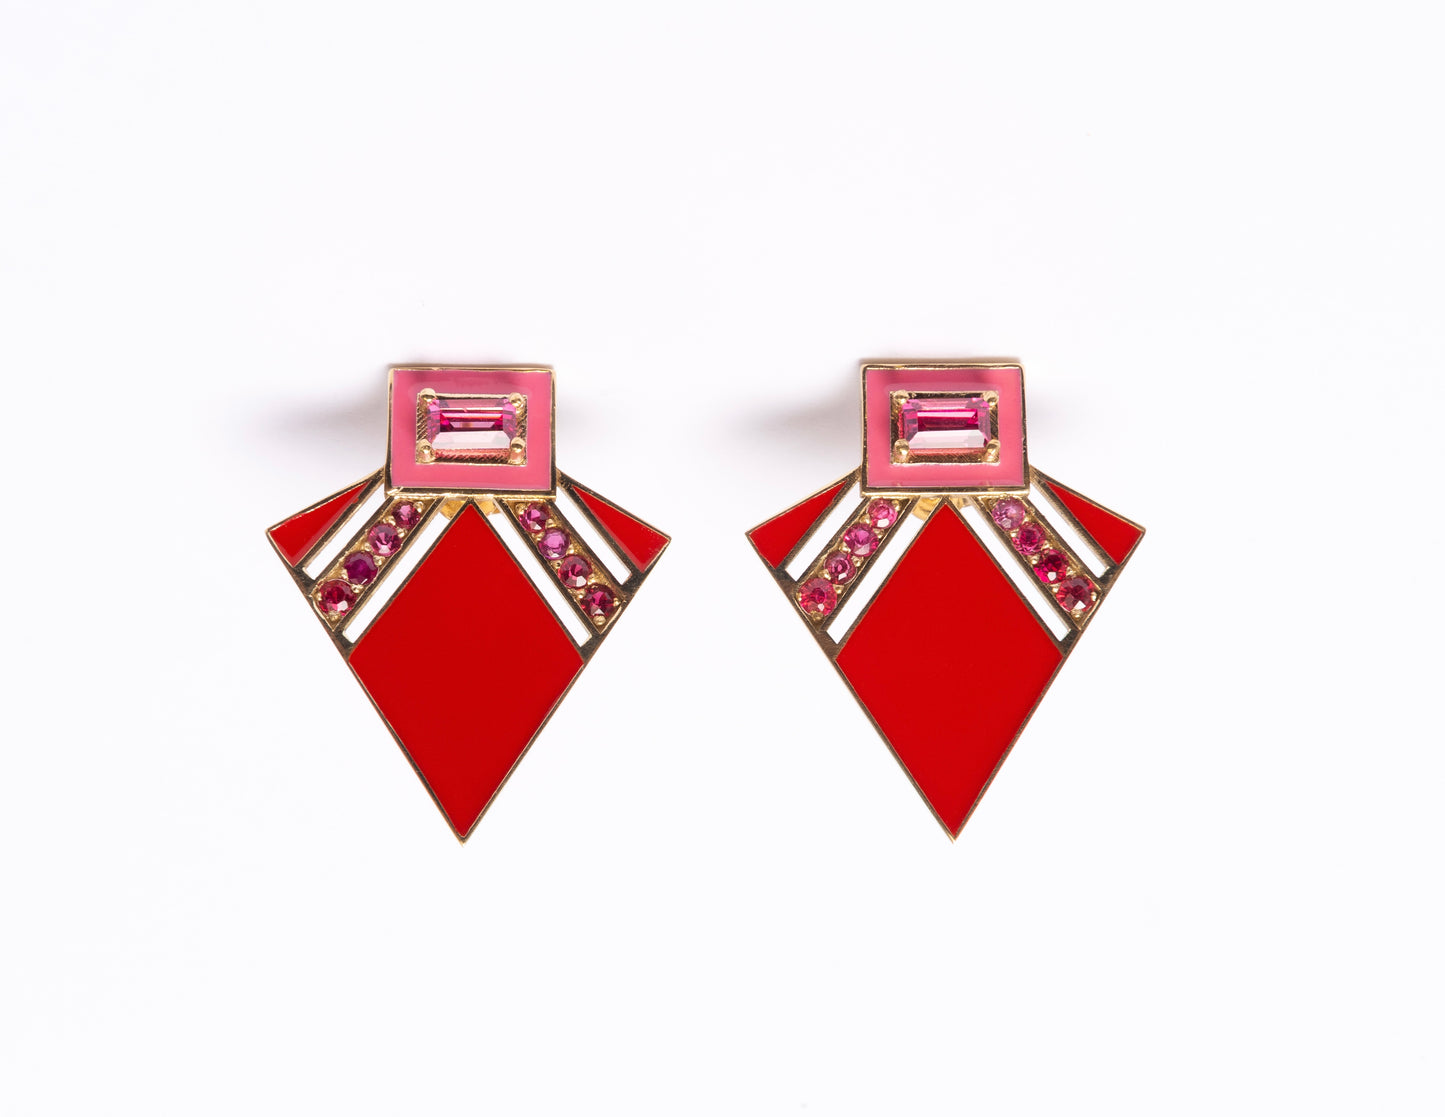 14K Gold Pink + Ombré Red Spinel Art Deco Enamel Fan Earrings